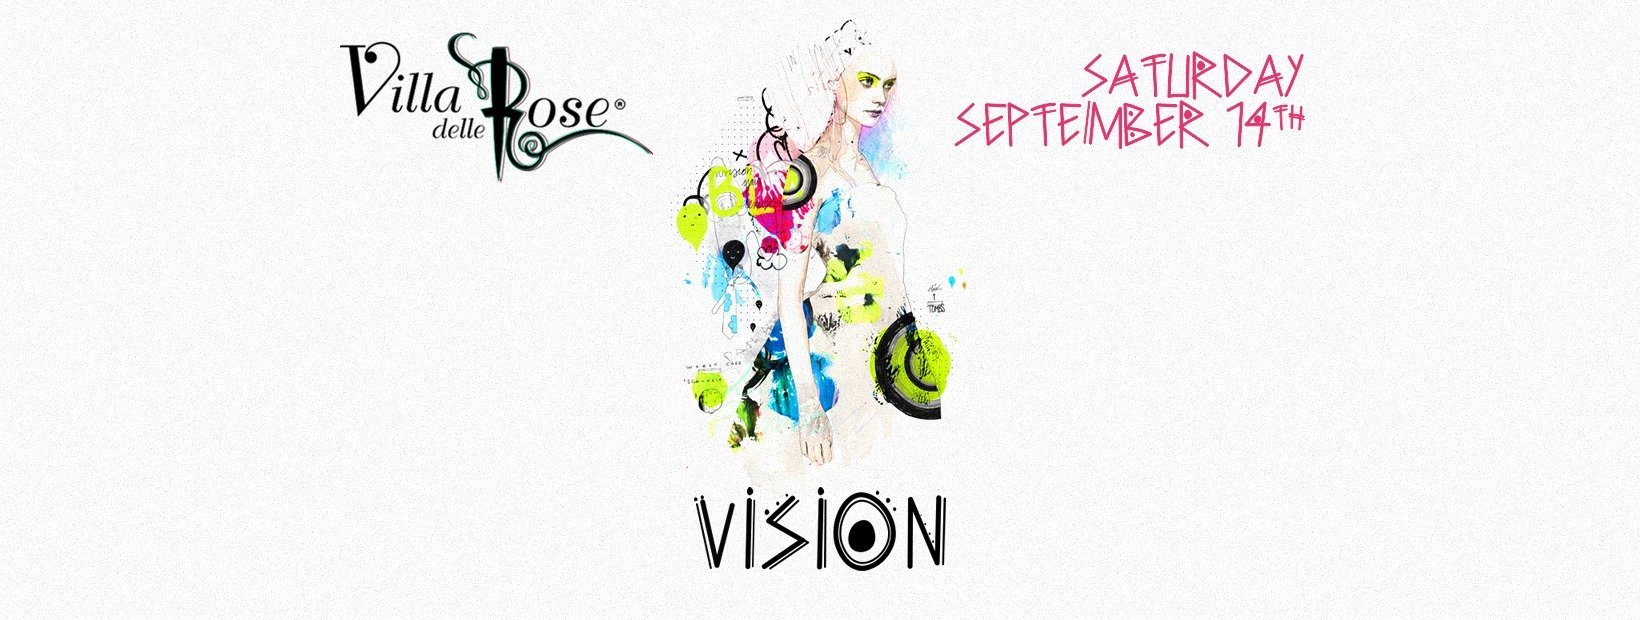 Villa Delle Rose Sabato 14 Settembre 2019